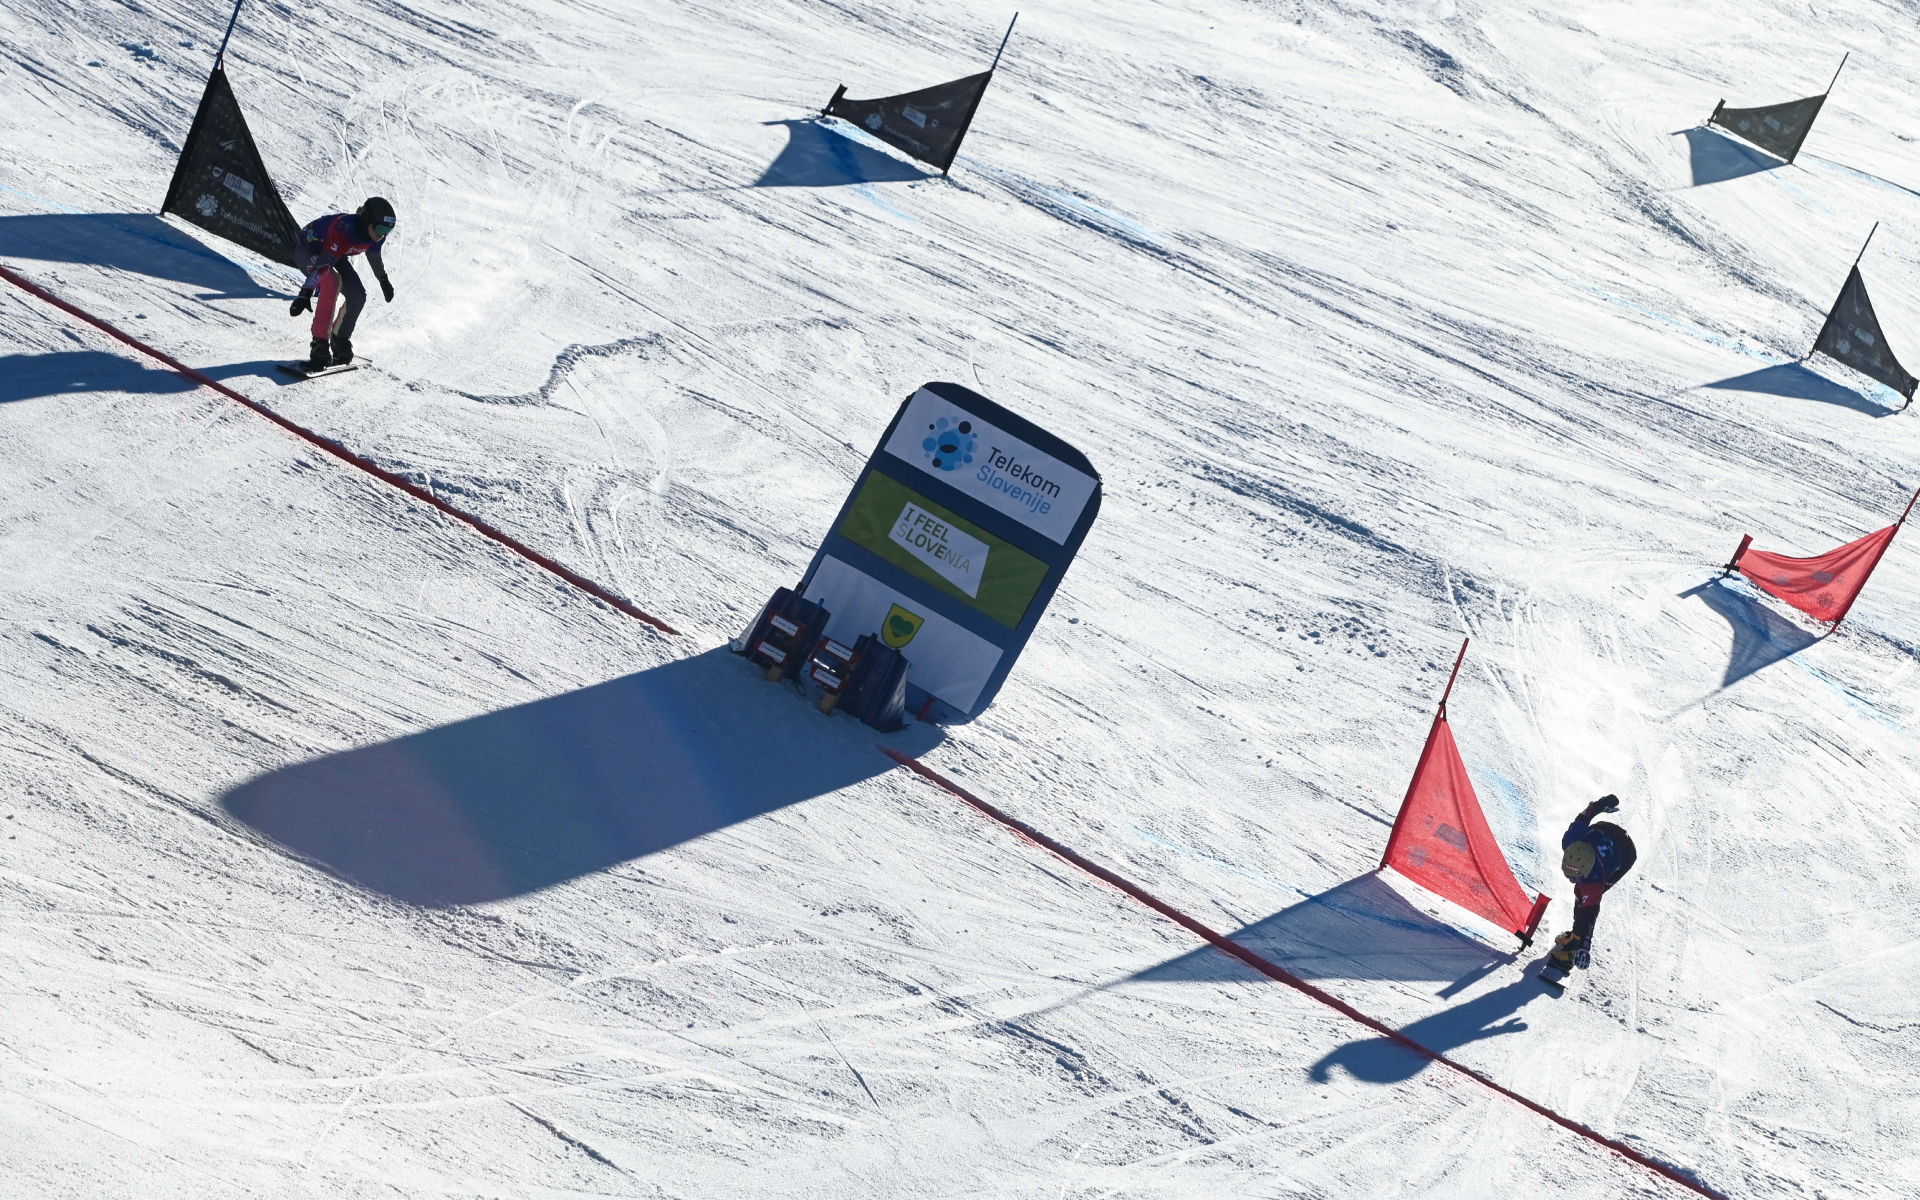 Соревнования в паралелльном гигантском слаломе у сноубордистов